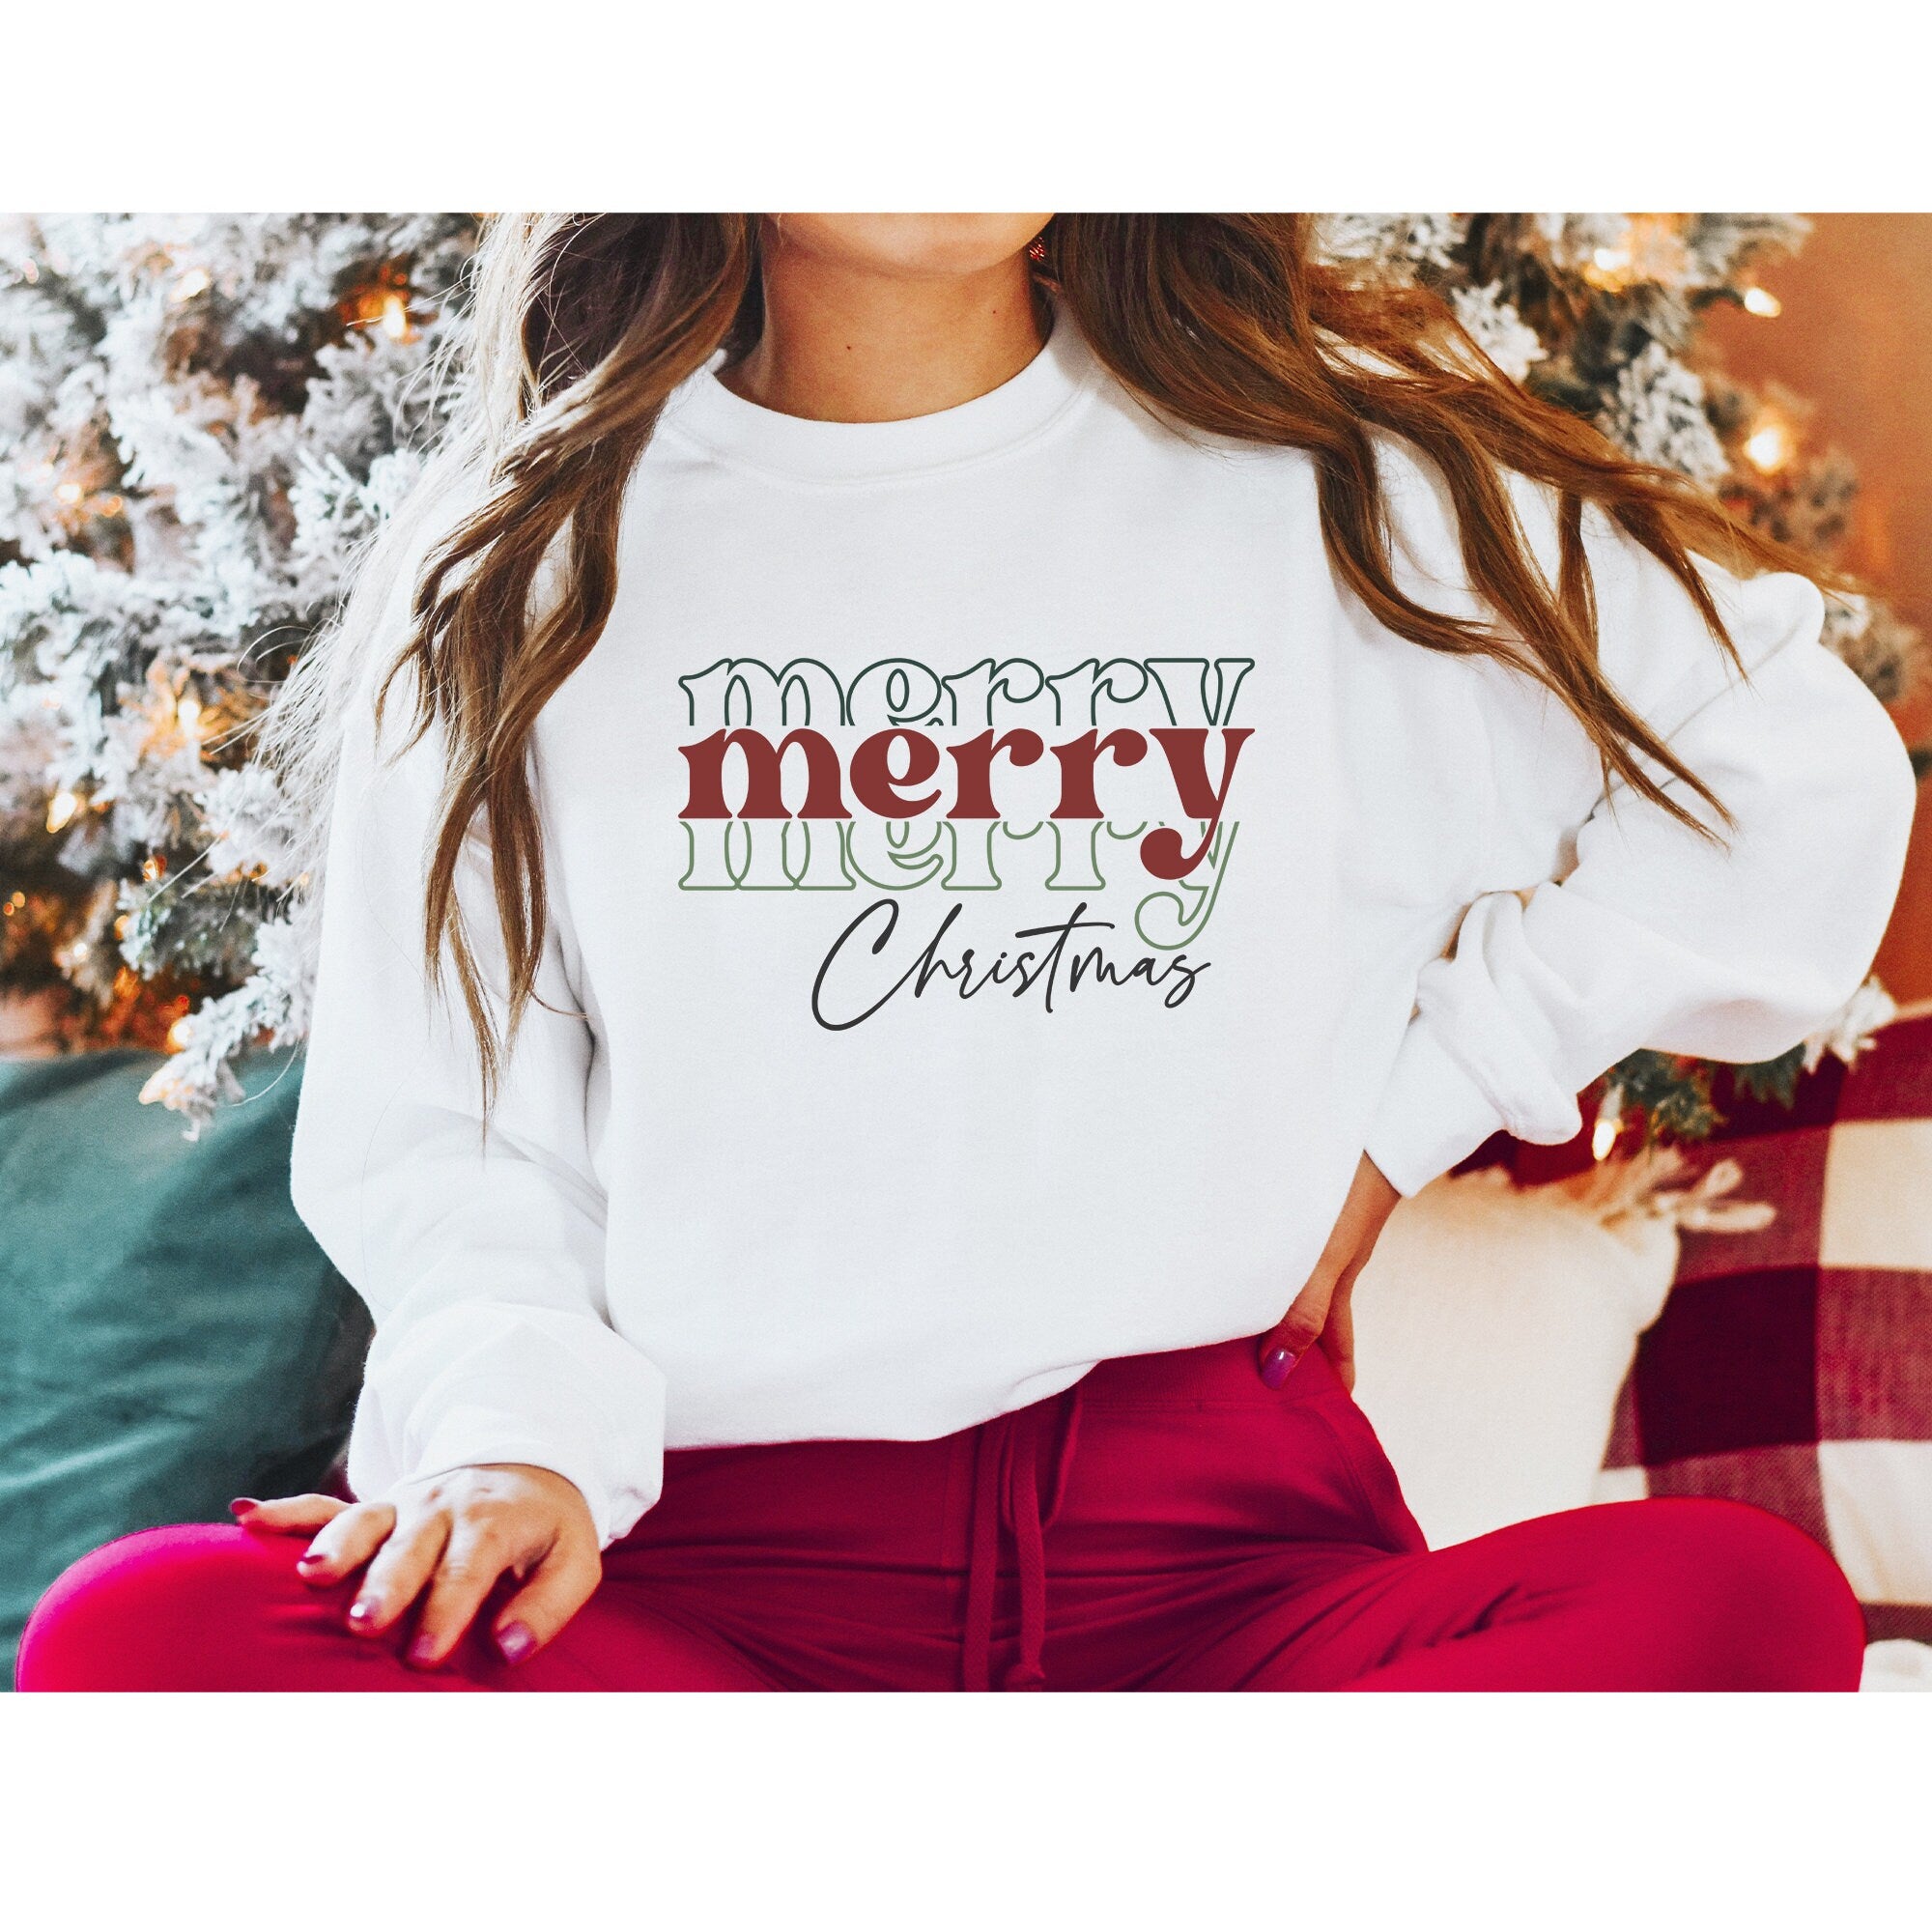 Merry Christmas Sweatshirt, Christmas Sweater, Merry Christmas Unisex Sweatshirt, Christmas Sweatshirt, Christmas Pajamas Unisex